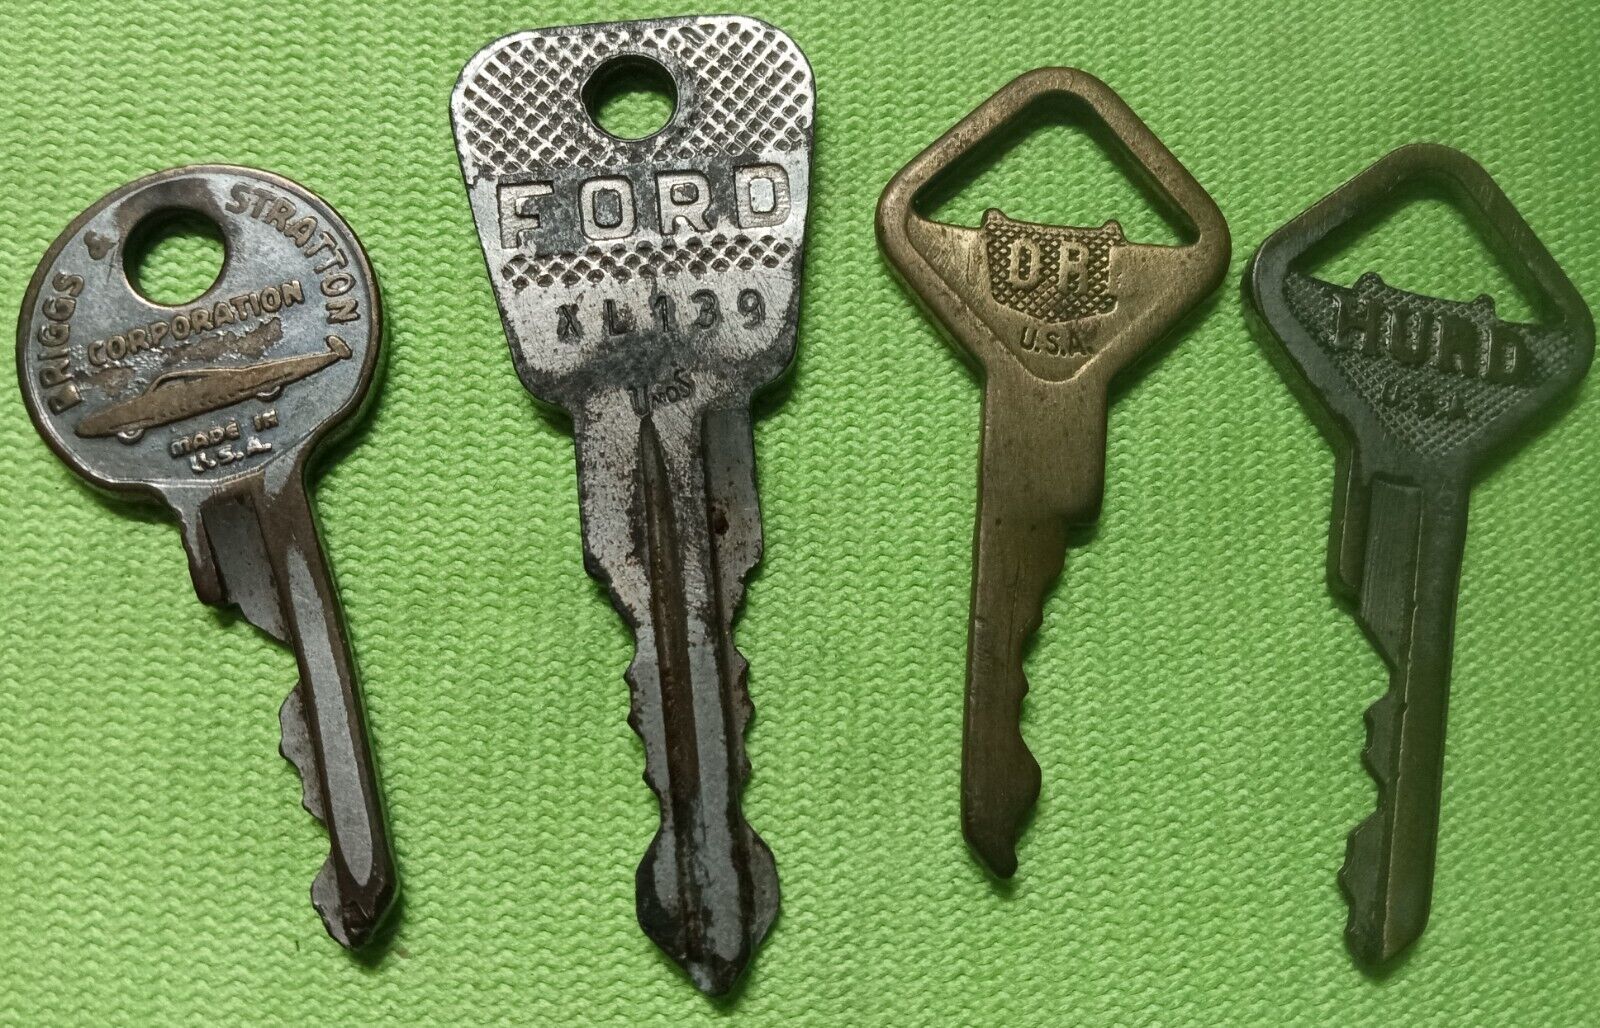 Lot of Vintage Automobile Keys - FORD